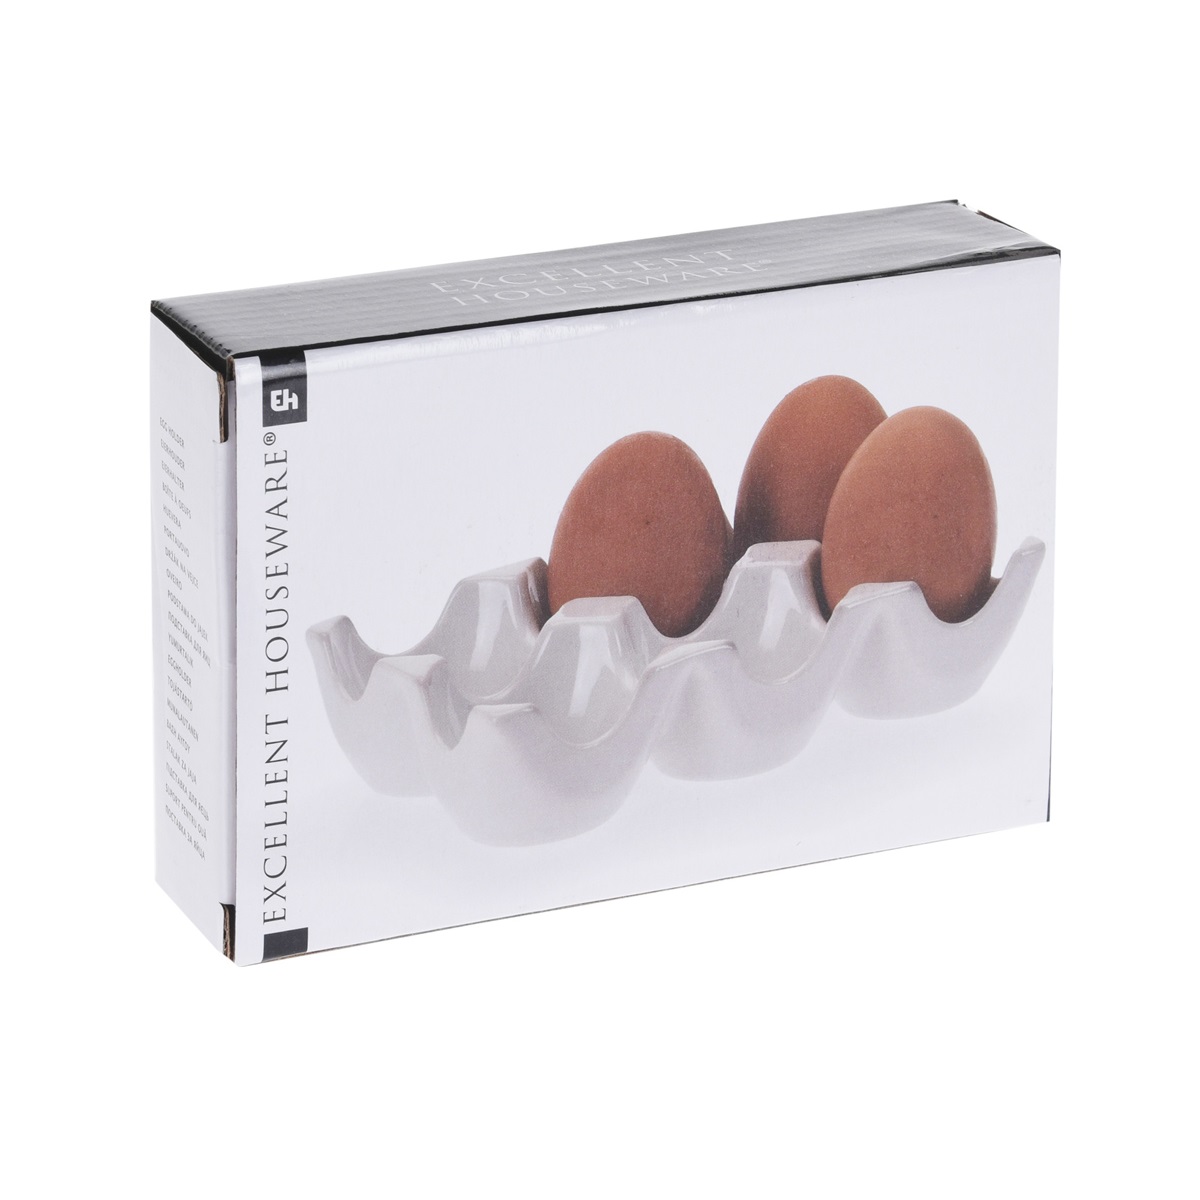 Подставка для яиц Excellent Houseware фарфоровая от CookHouse